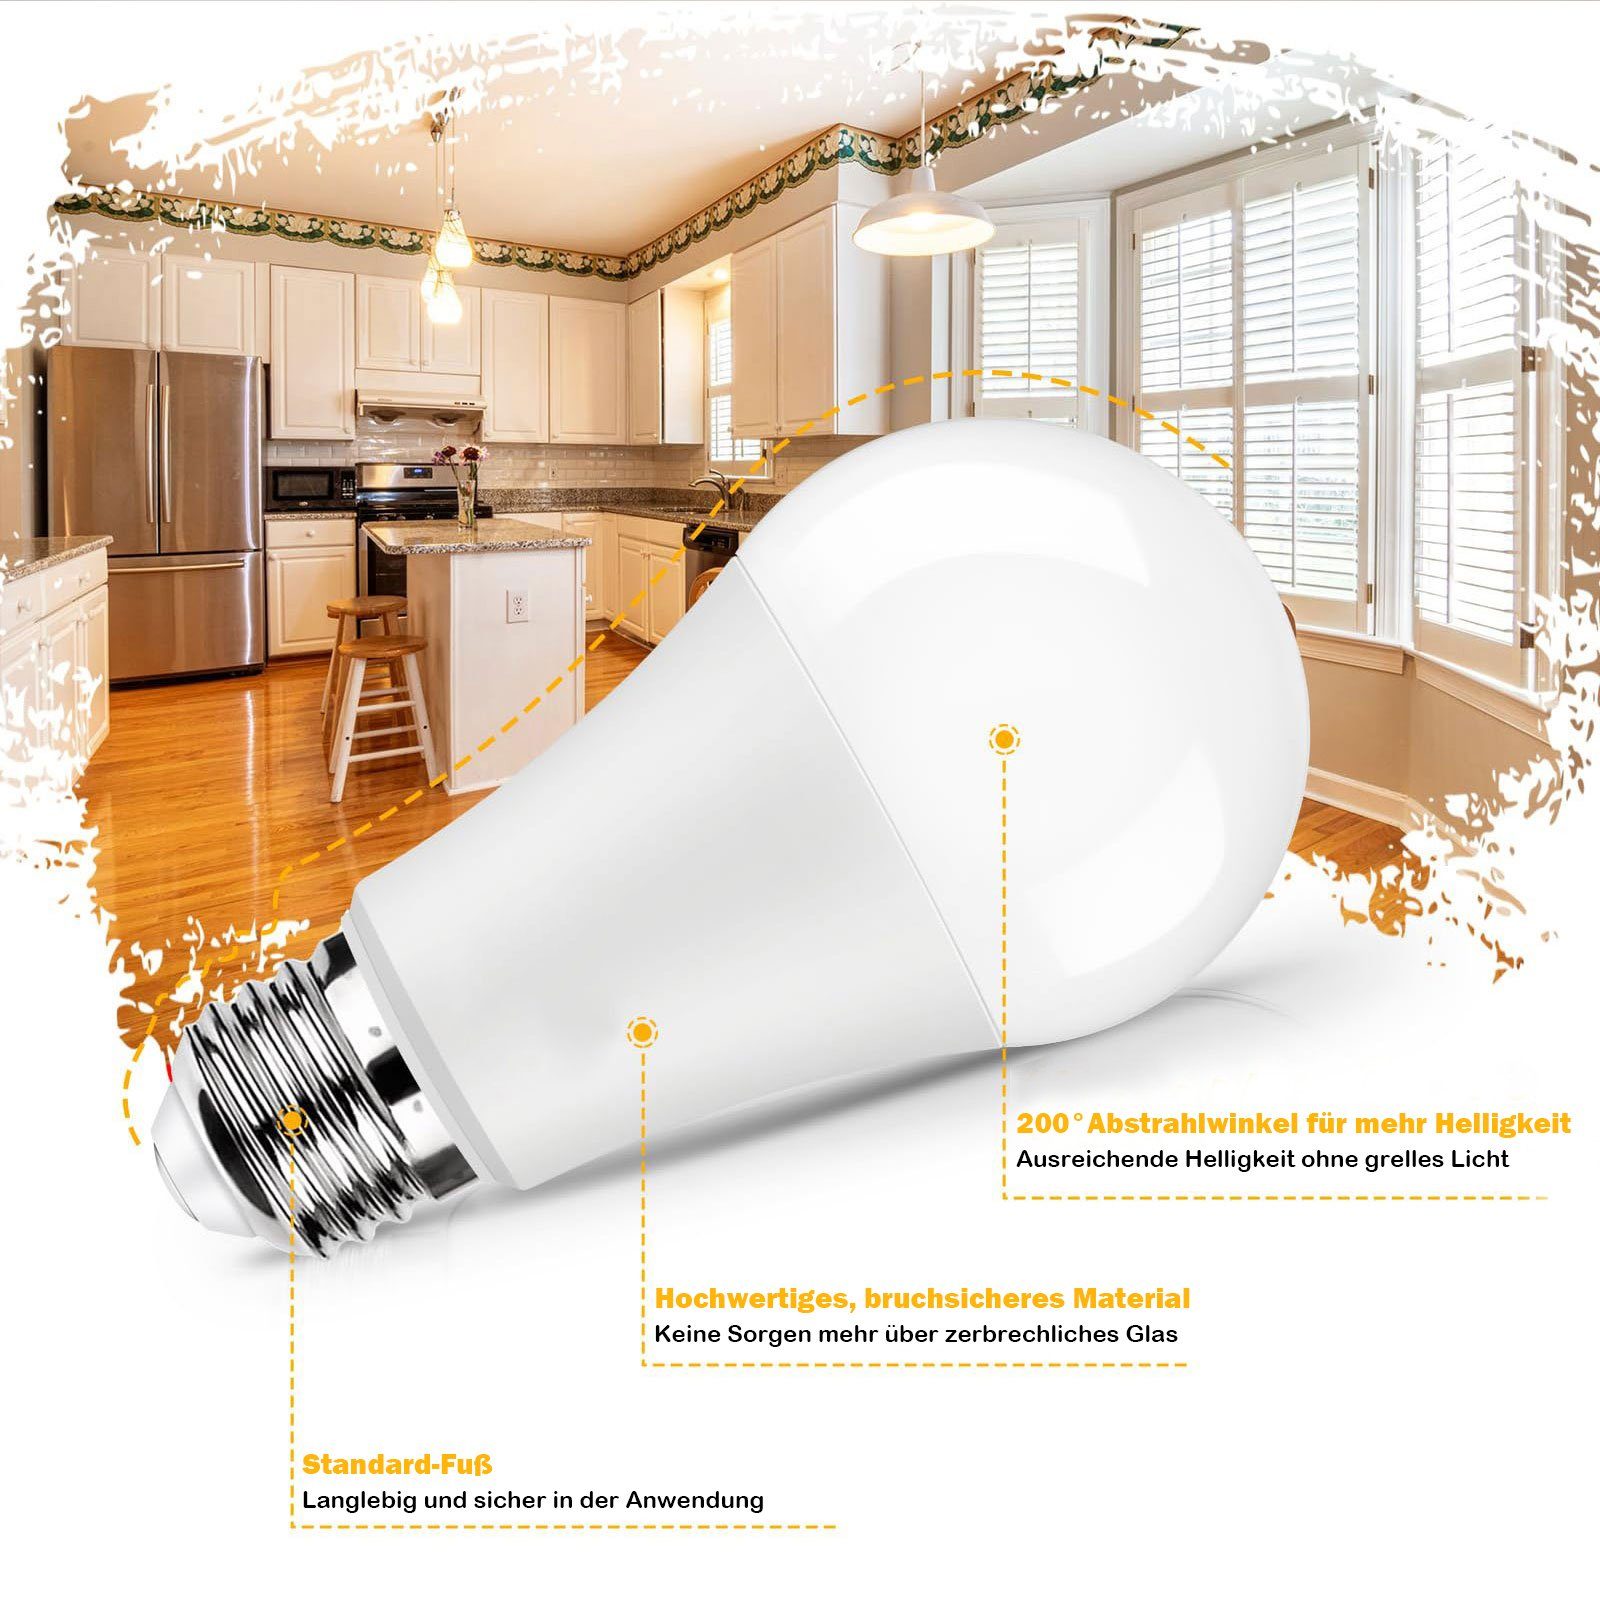 MUPOO Weiß, LED E27 10er Licht 6500K 12W, LED-Glühbirne Pack LED-Leuchtmittel Lampe LED